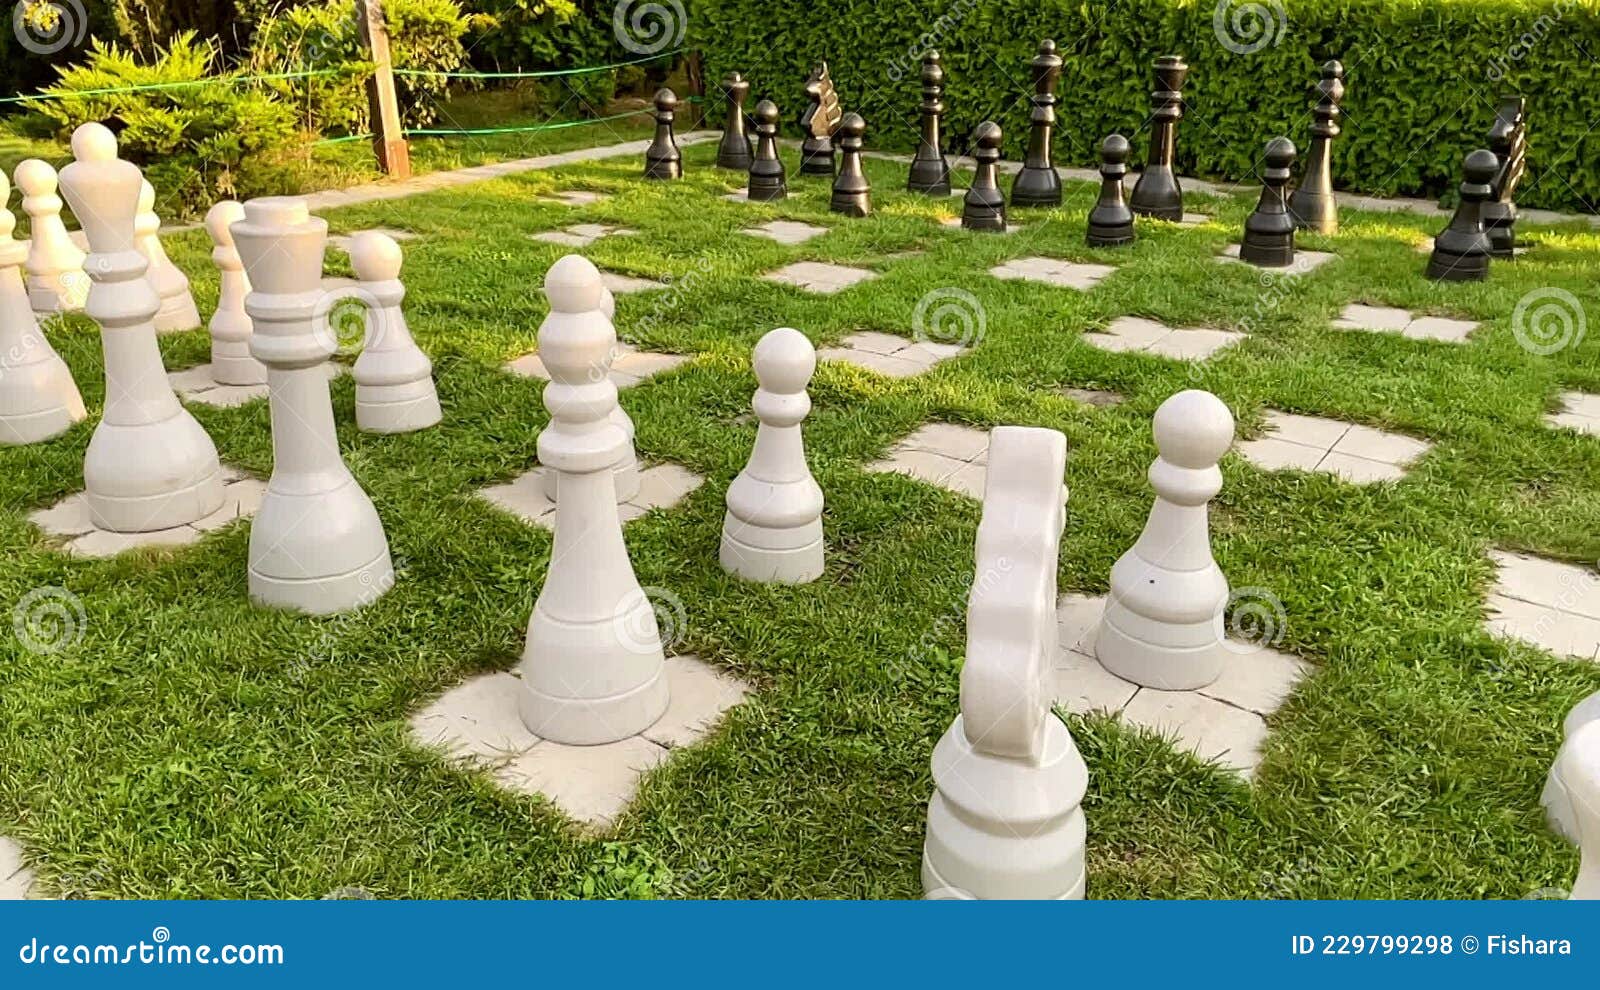 Empresário joga no jogo de tabuleiro de xadrez para ideias e